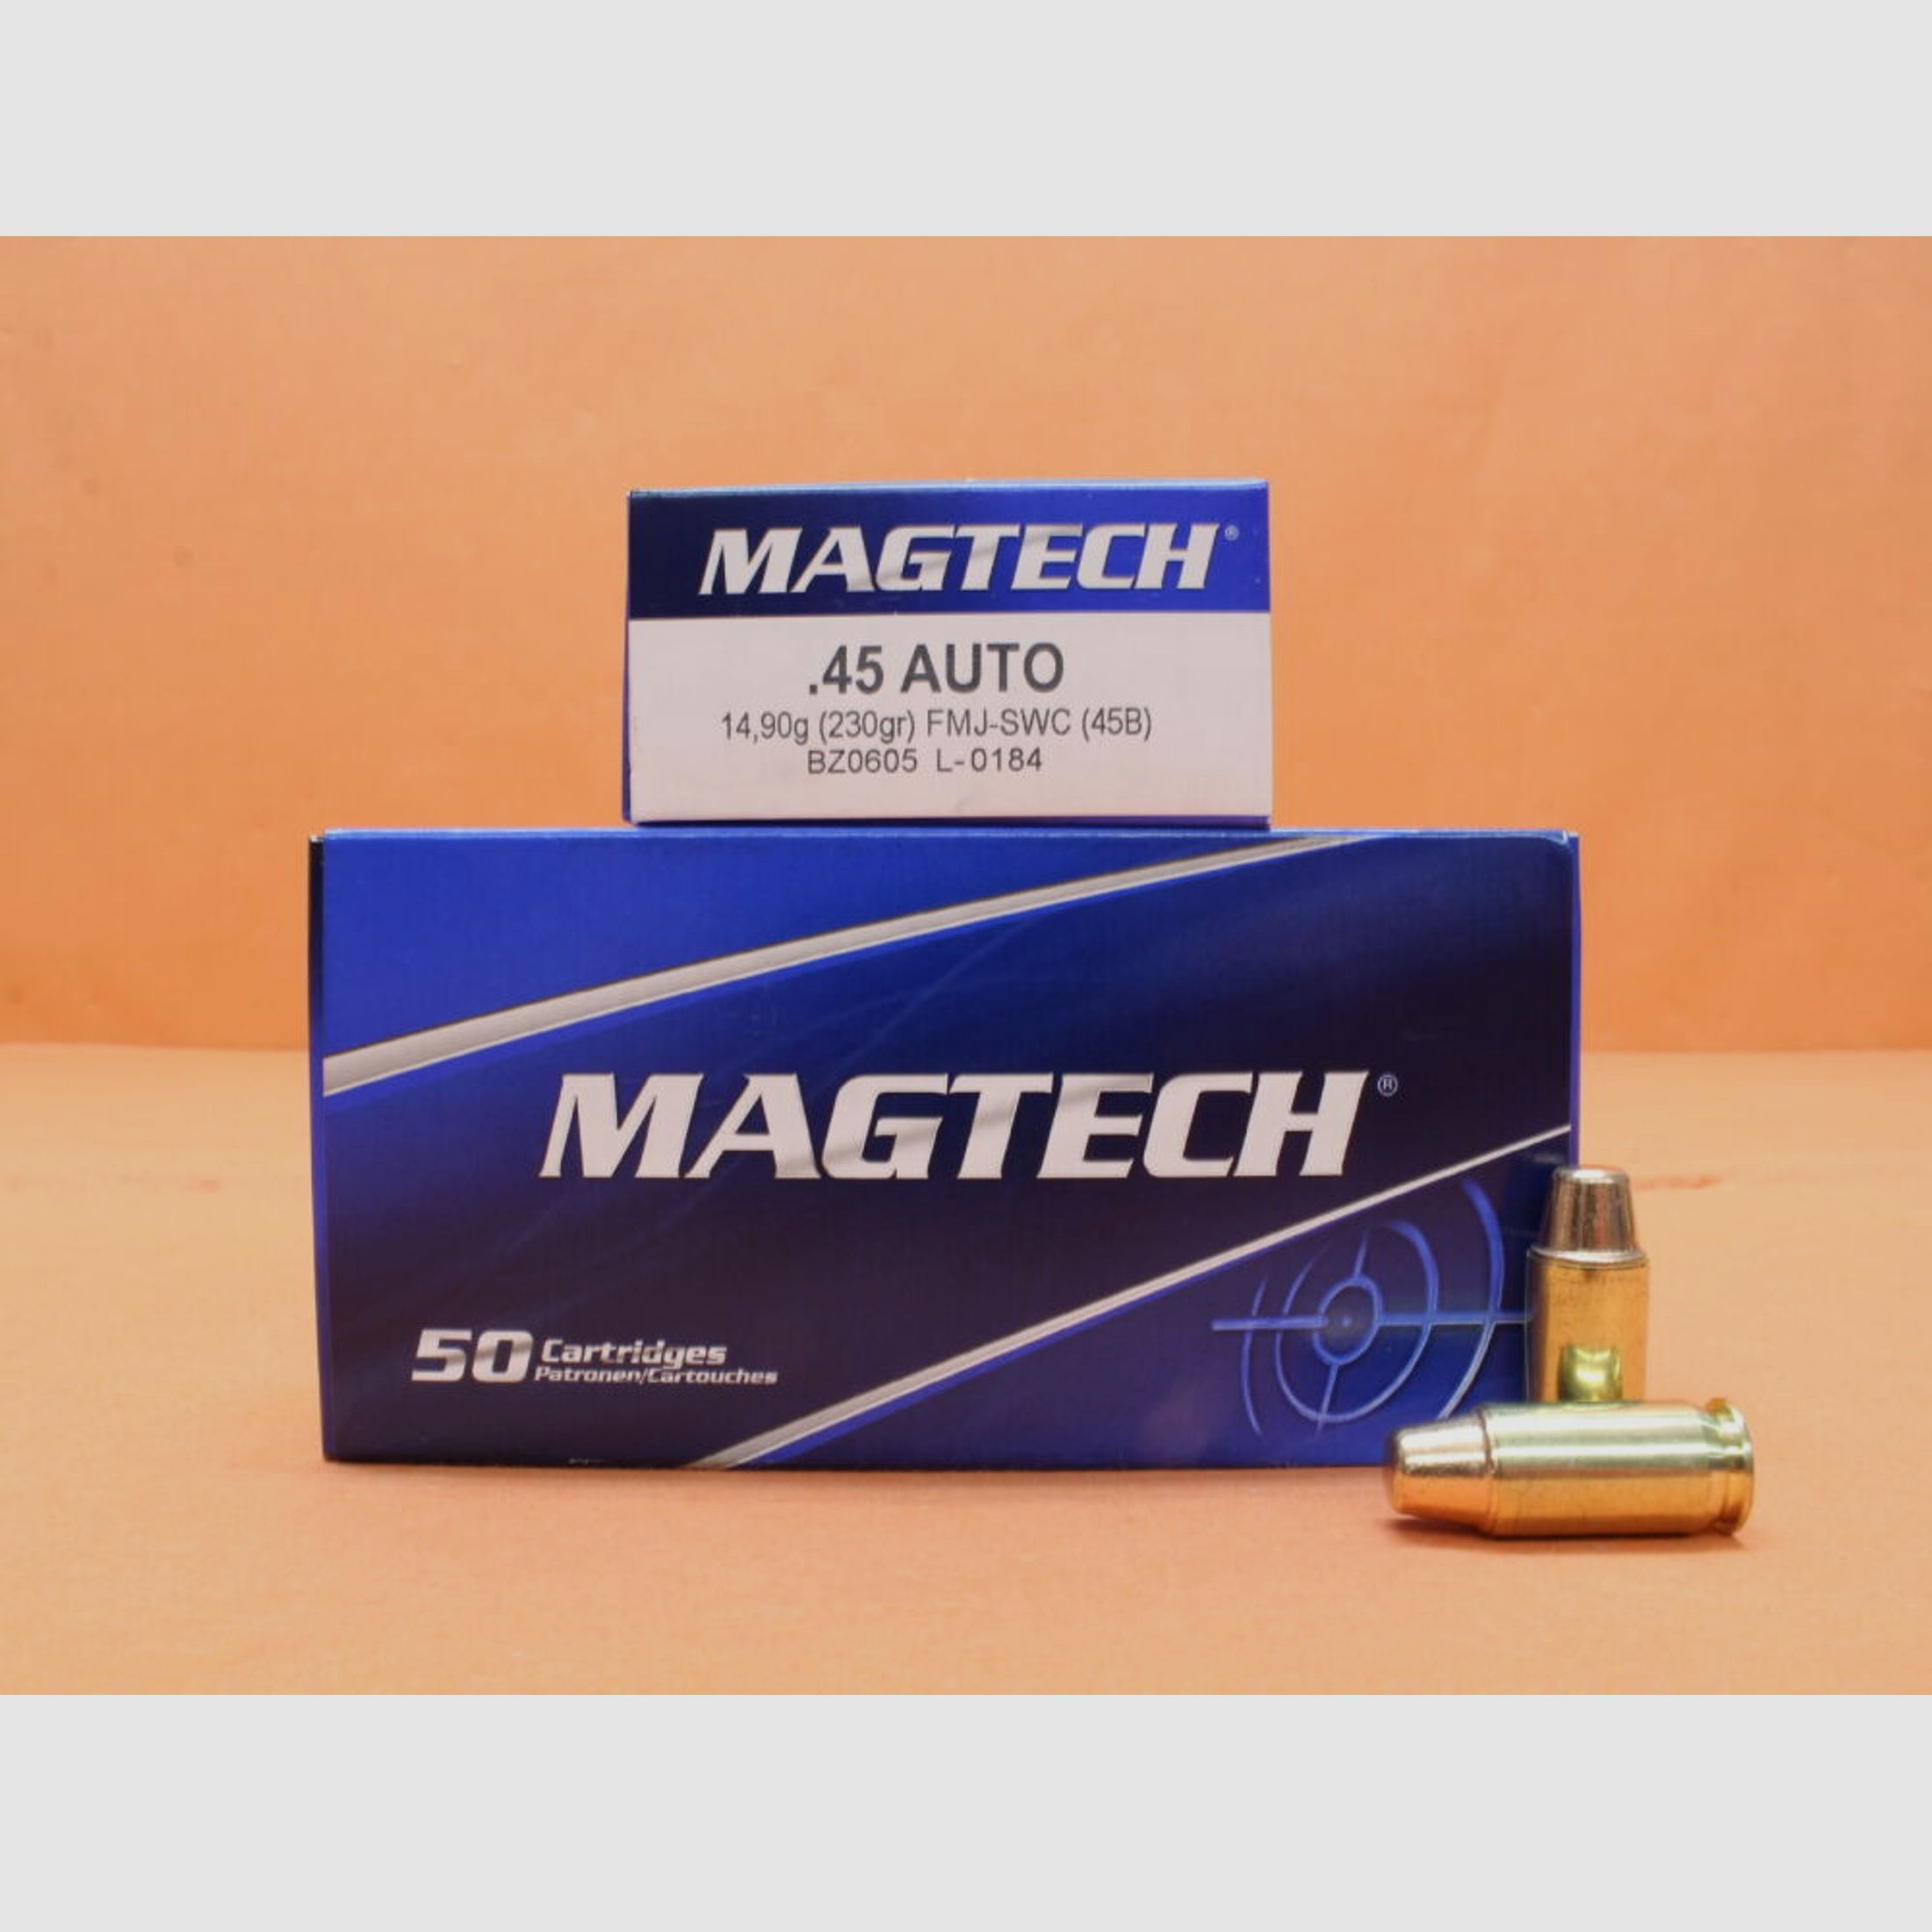 Magtech	 Patrone .45Auto Magtech 230grs FMJ/ FMC-SWC (45B) VE 50 Patronen/ 14,90g Vollmantel-Semi-Wadcutter